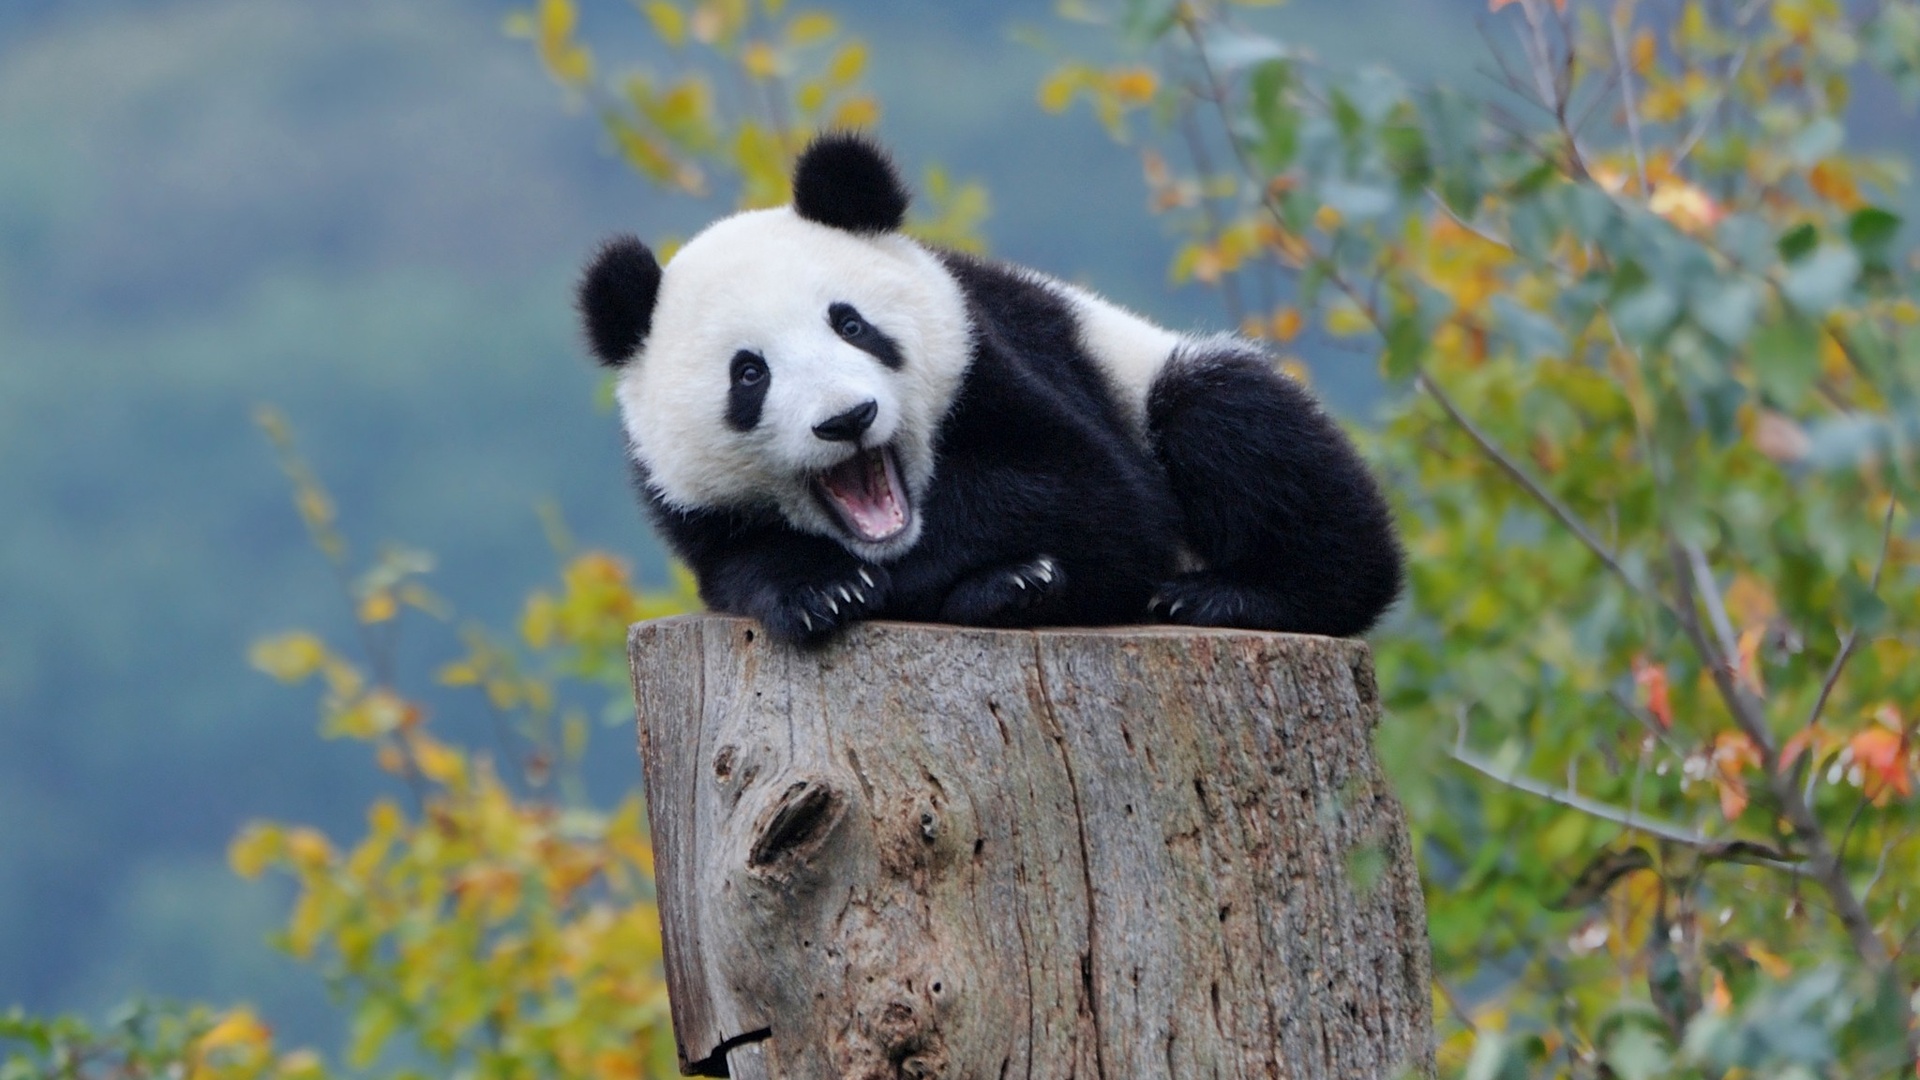 熊猫壁纸【47】壁纸是一款电脑壁纸,属于动物分类,熊猫